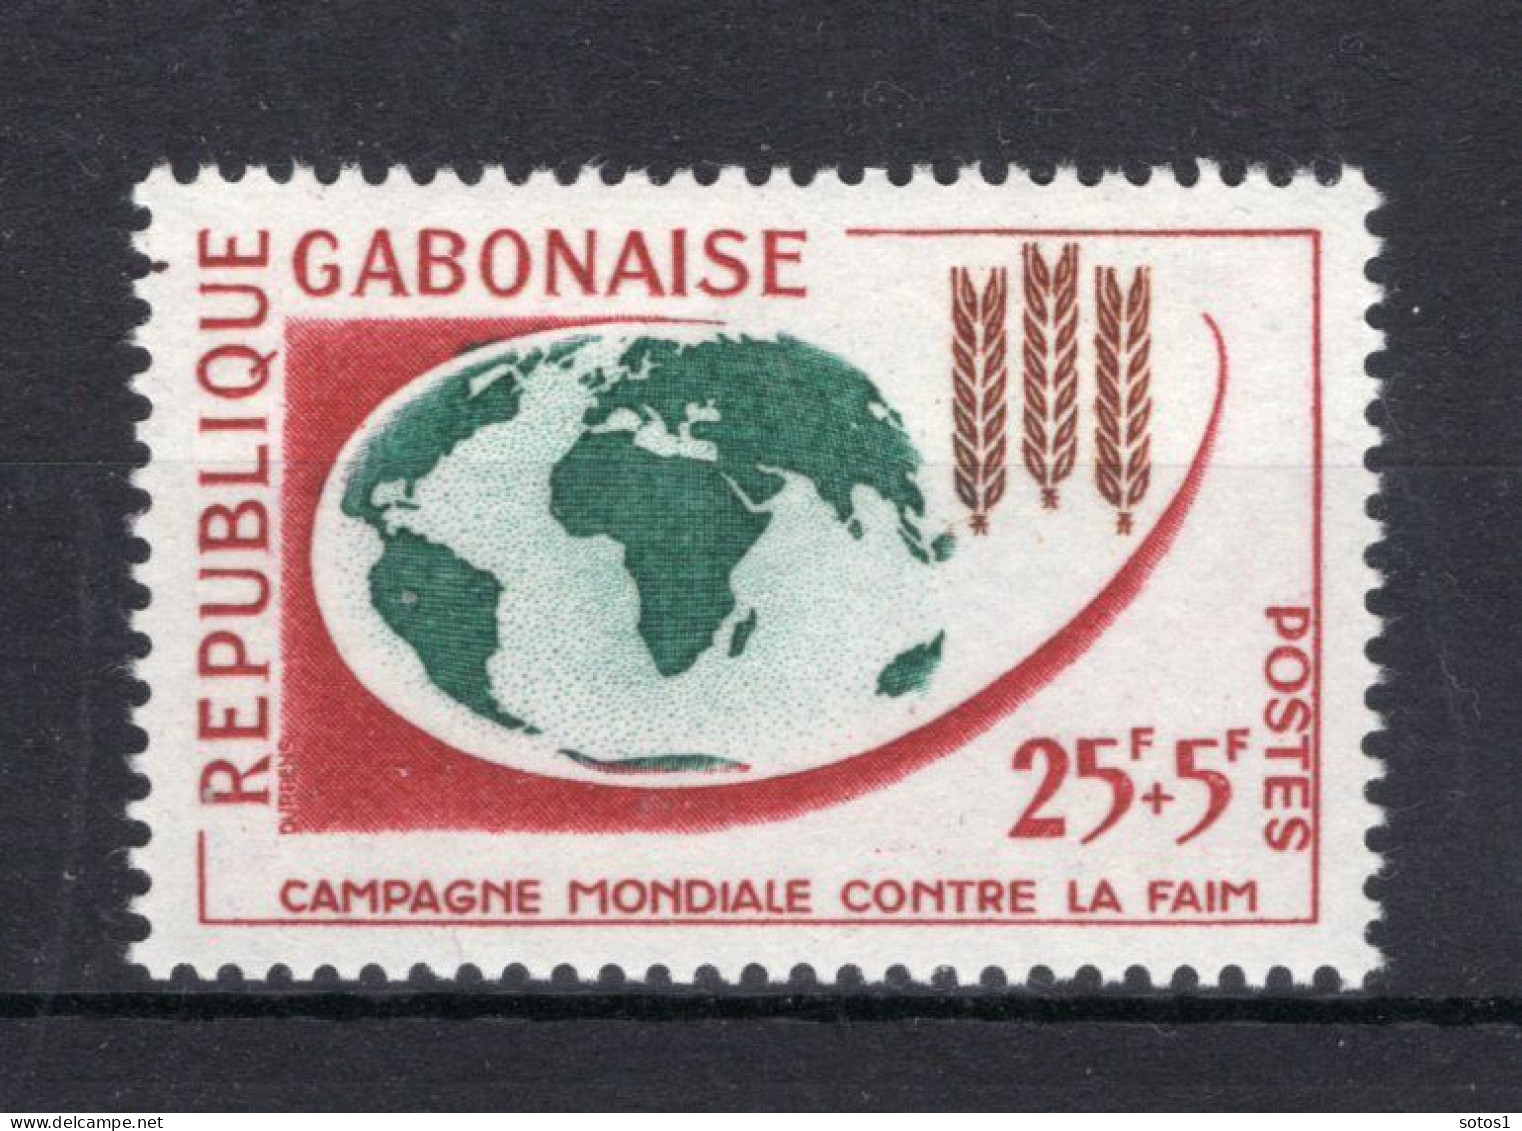 GABON Yt. 165 MNH 1963 - Gabon (1960-...)